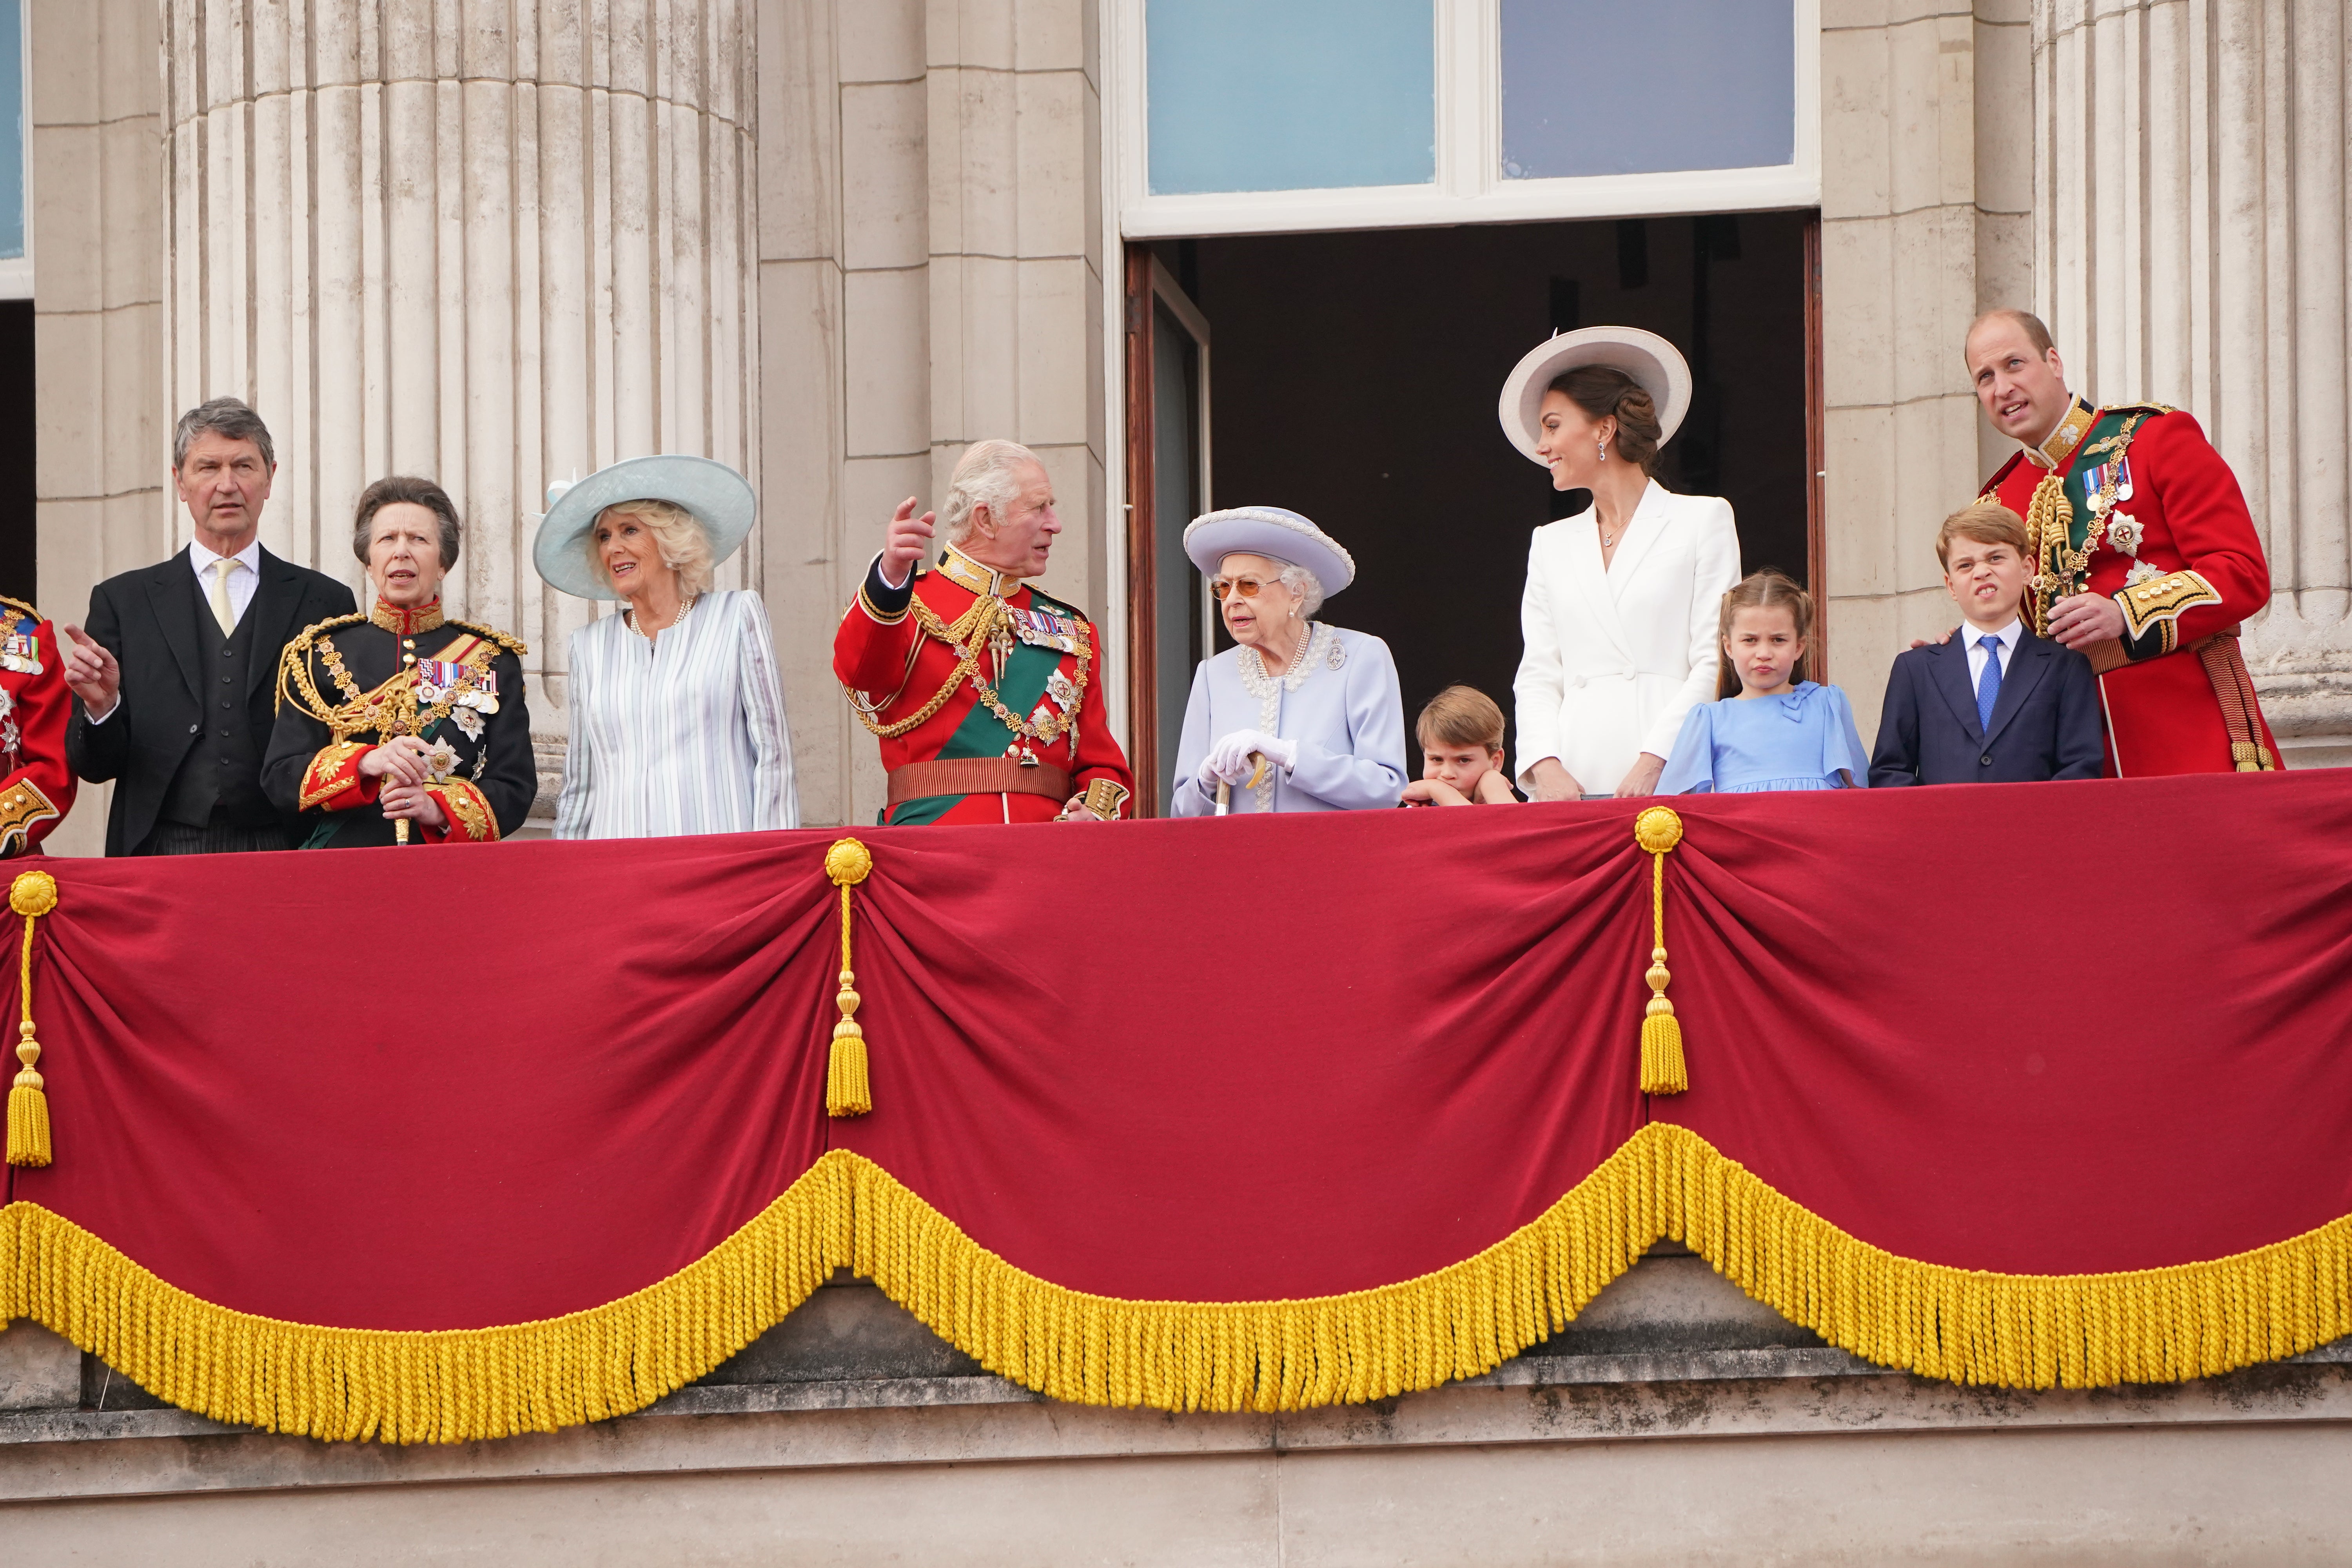 The royal family on the Palace balcony (Jonathan Brady/PA)